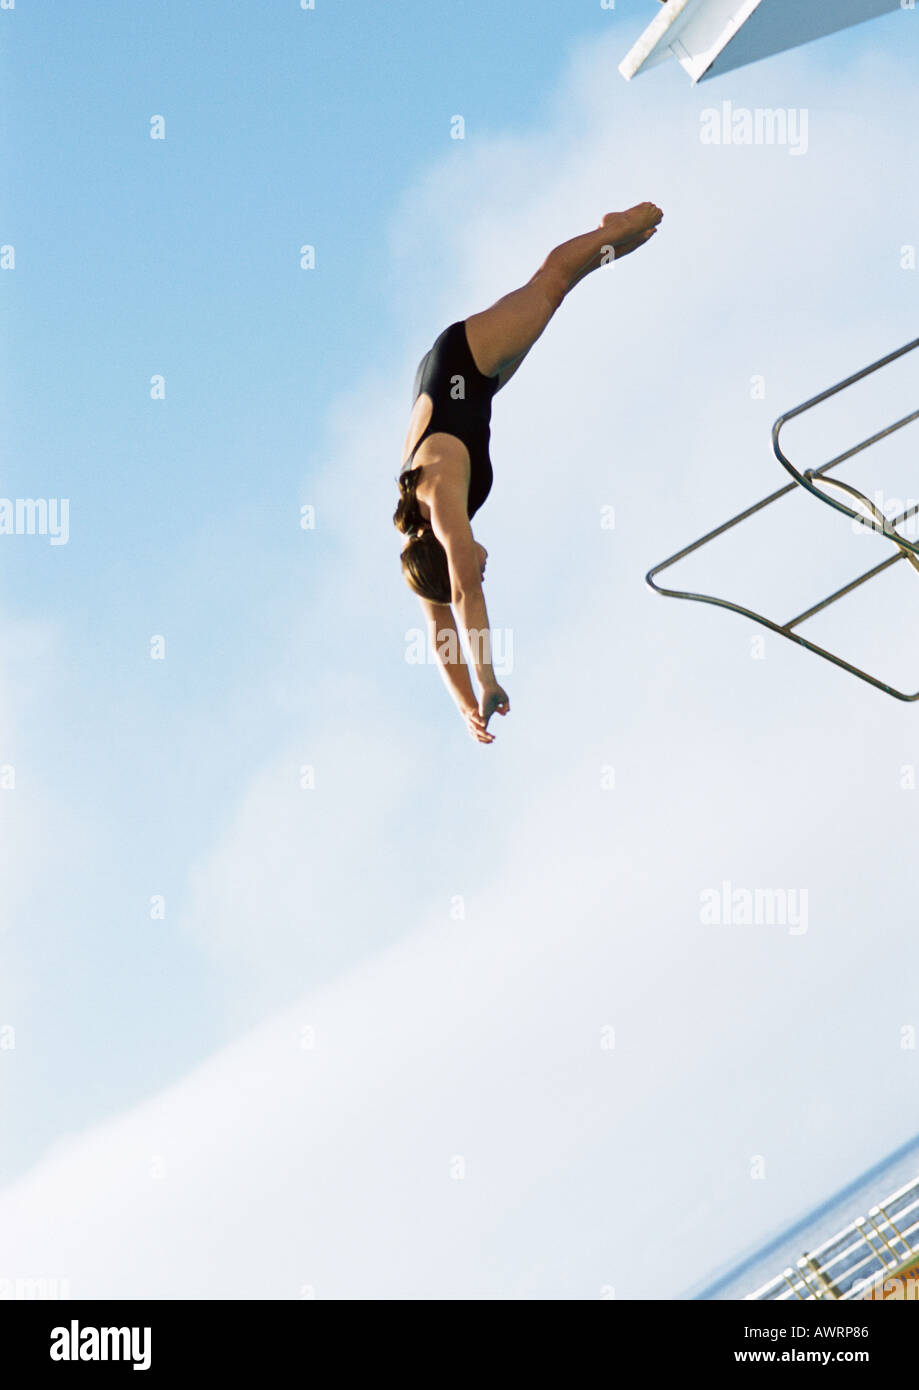 La donna a metà di immersione, a basso angolo di visione a piena lunghezza e cielo blu in background Foto Stock